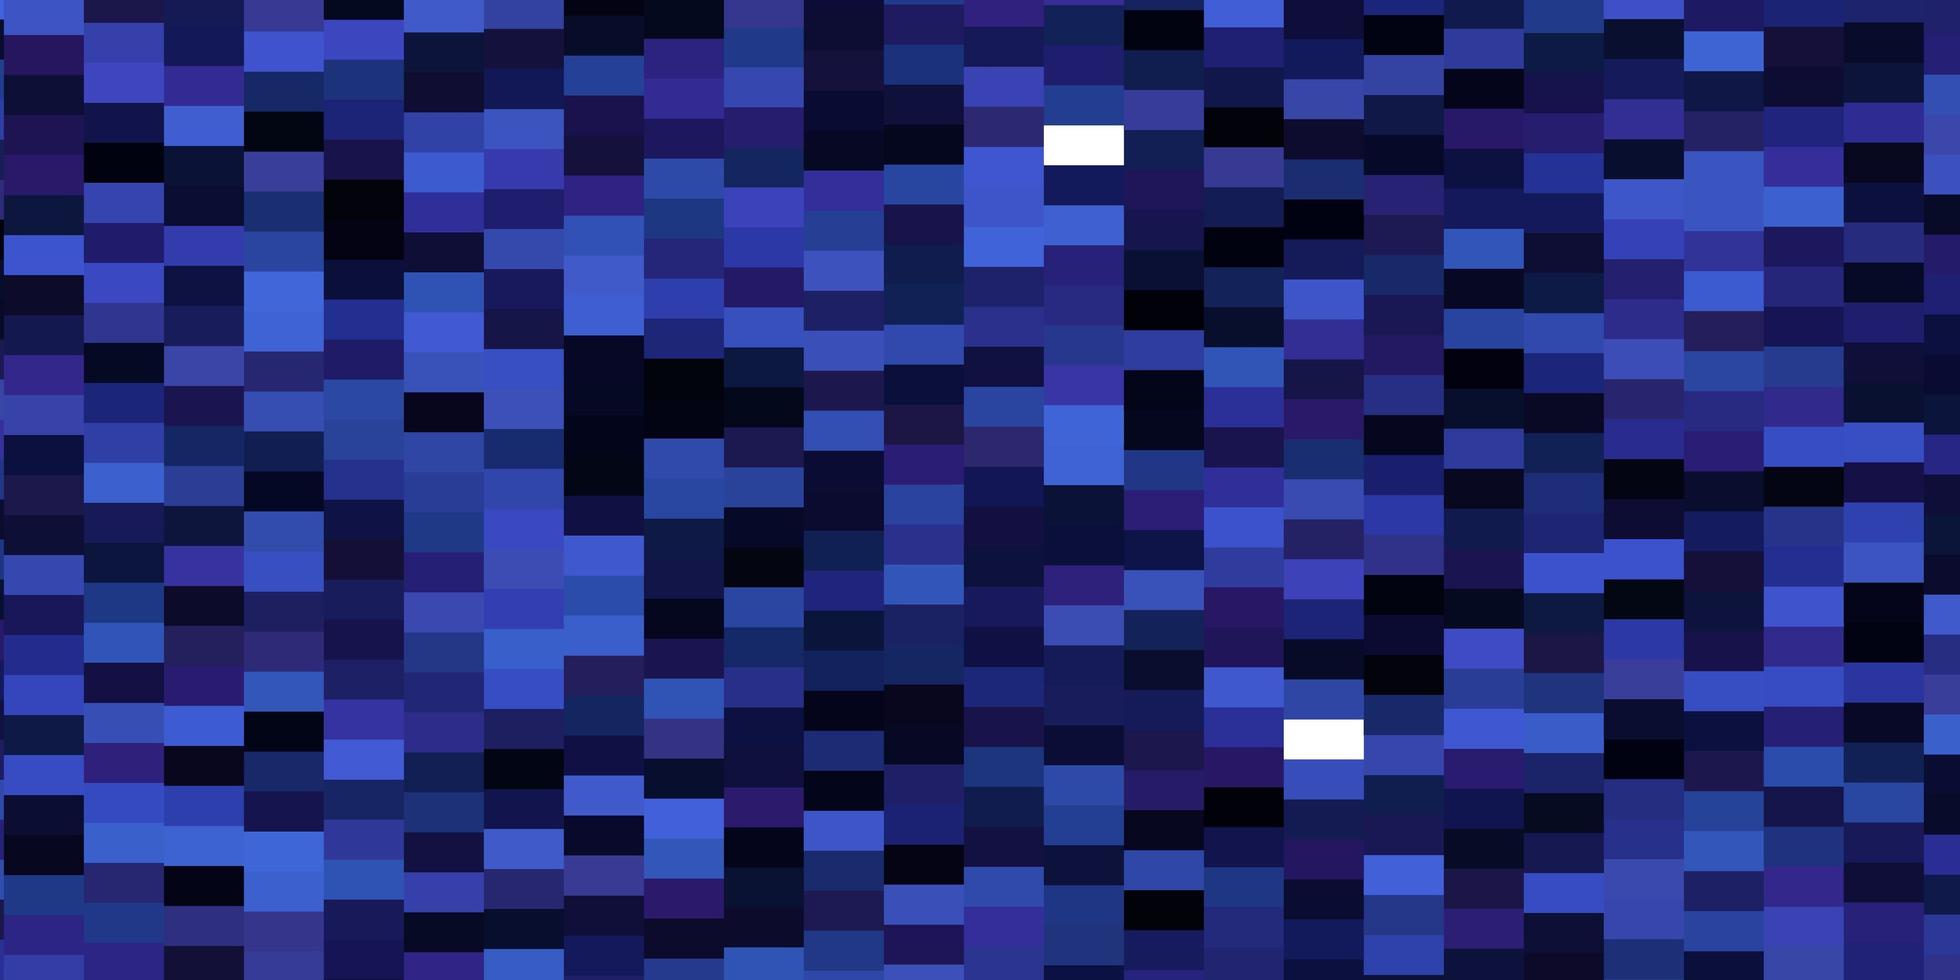 modèle vectoriel rose foncé, bleu dans les rectangles.